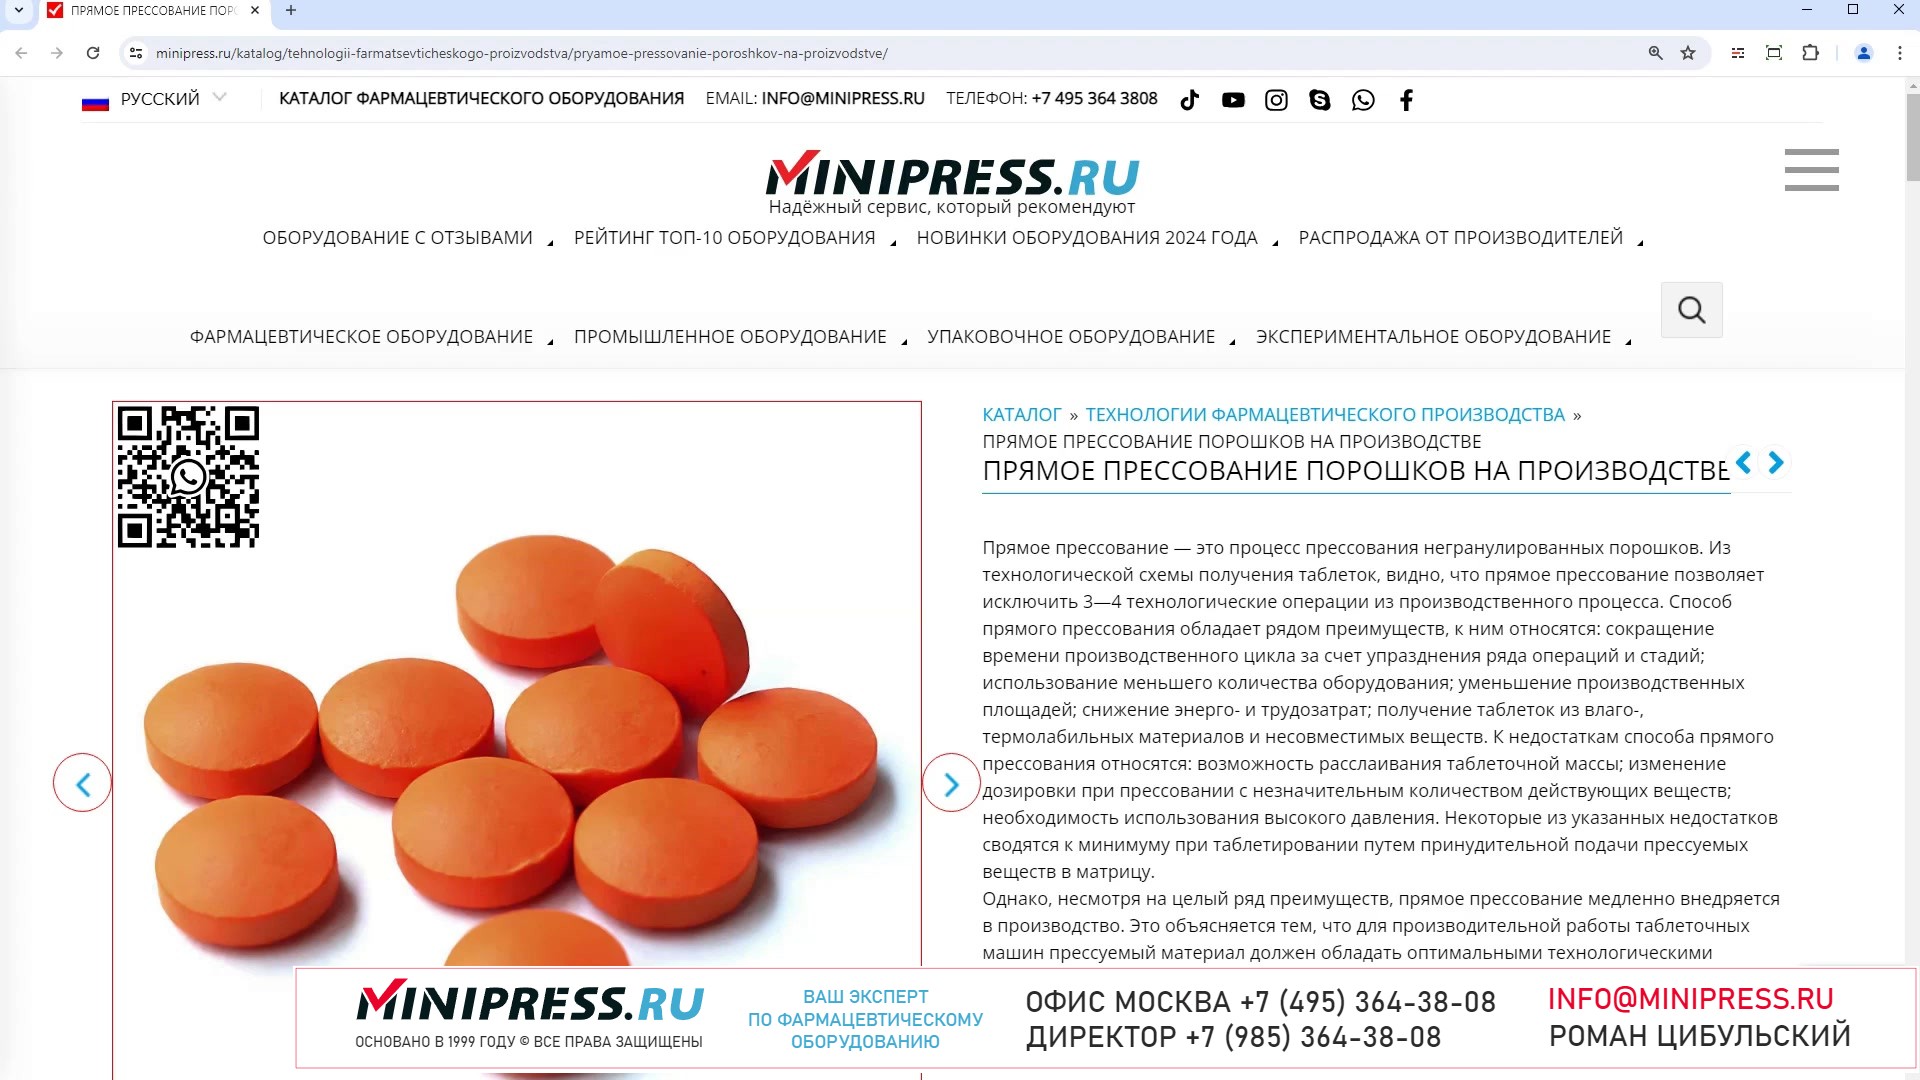 Minipress.ru Прямое прессование порошков на производстве